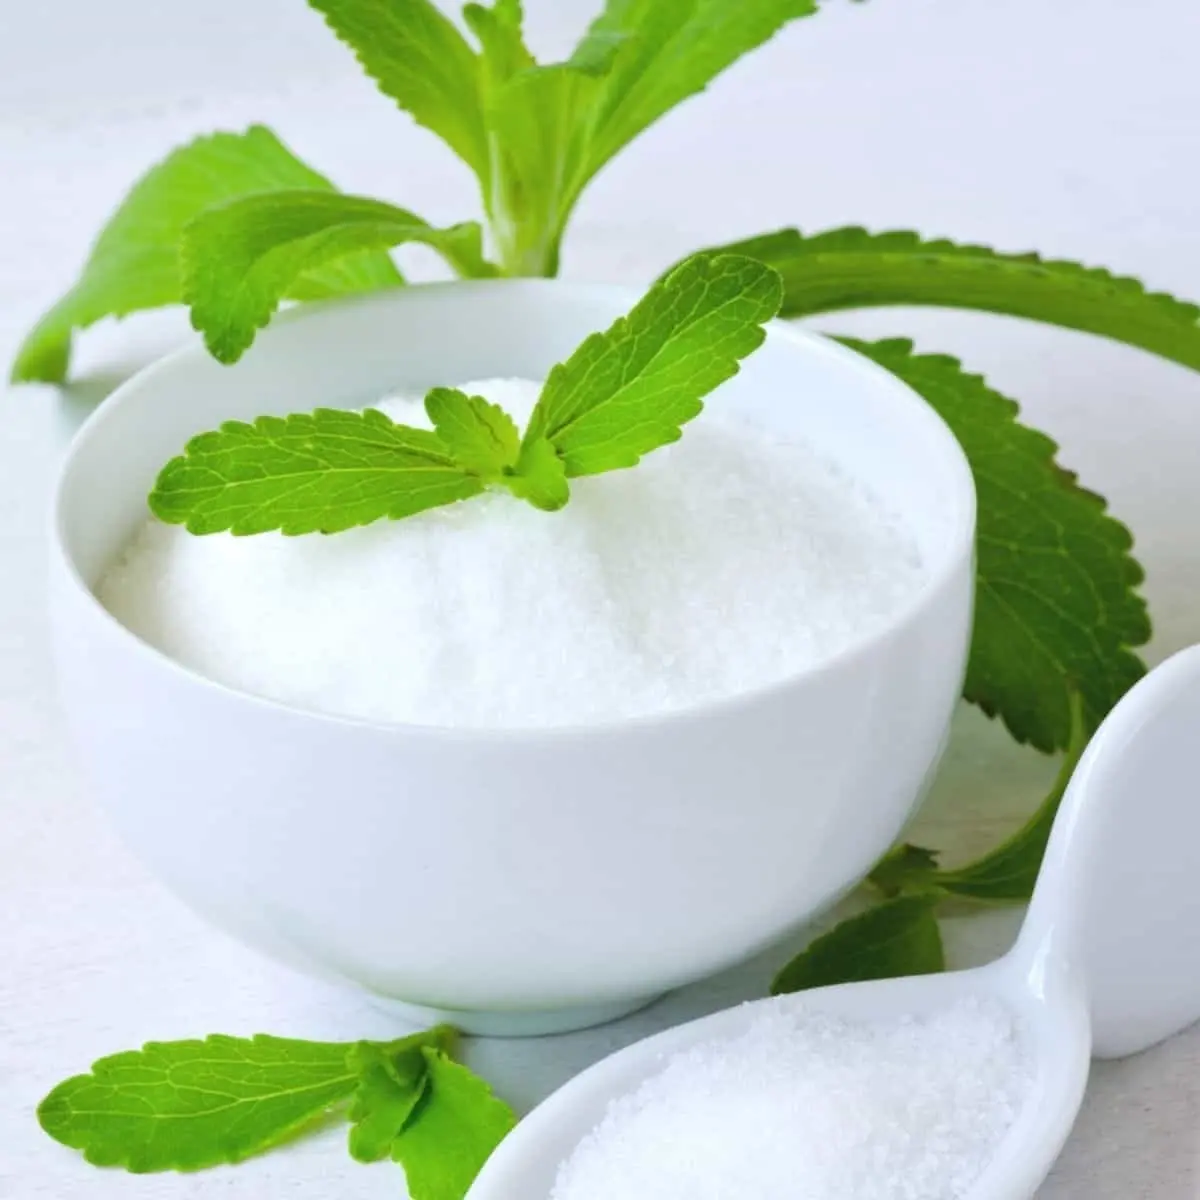 Harga terbaik Reb A bubuk ekstrak Stevia Leaf 97% potongan harga A oleh eksportir India dan label pribadi tersedia